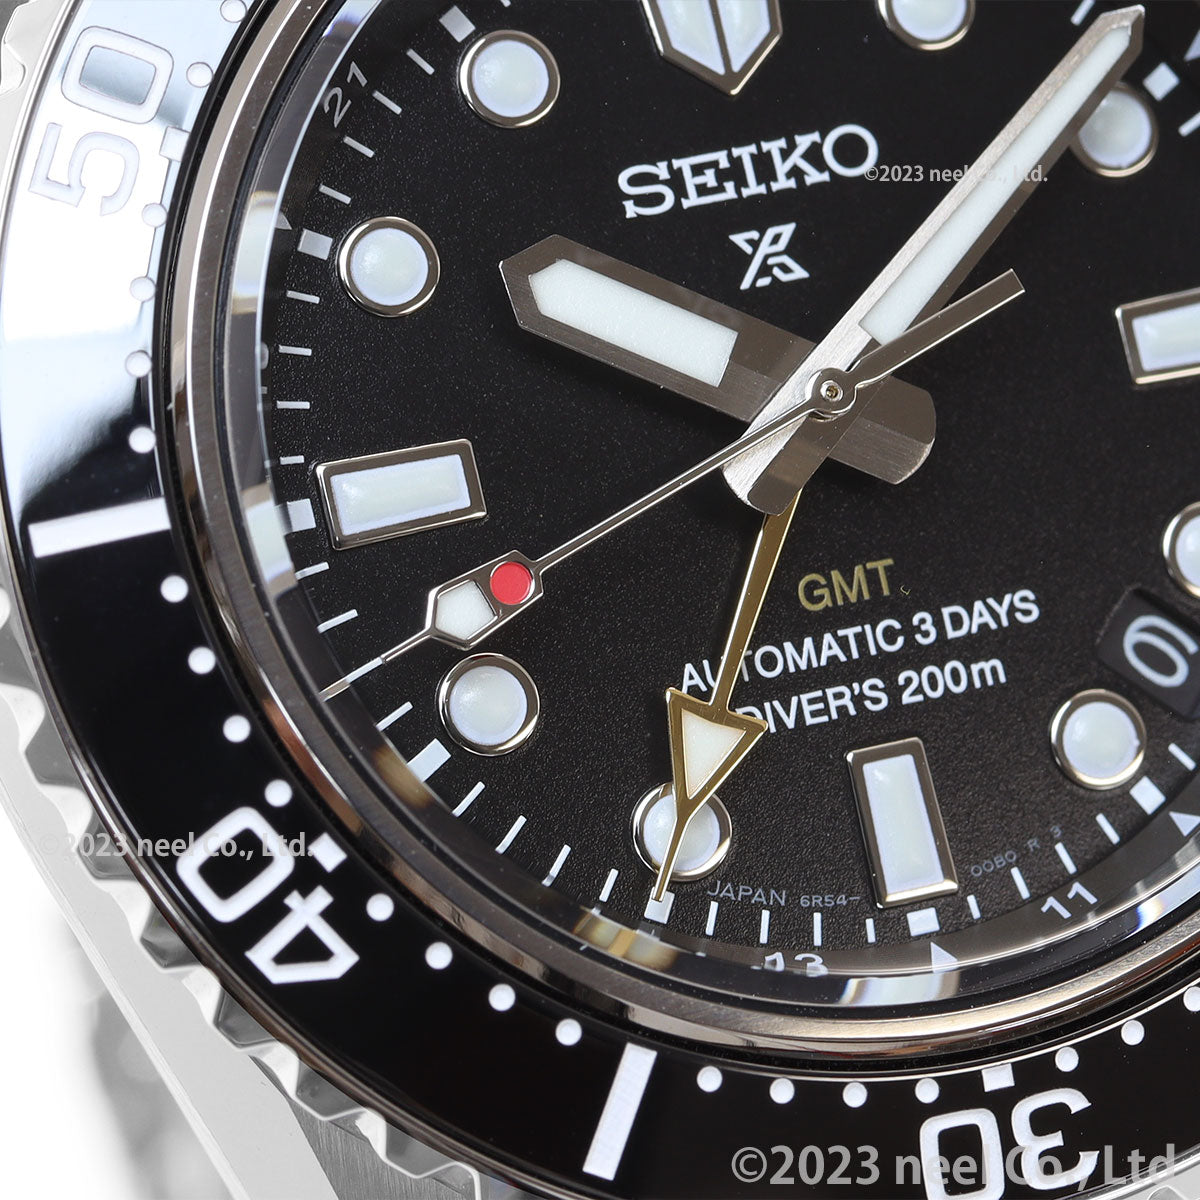 セイコー プロスペックス SEIKO PROSPEX SBEJ011 ダイバーズ メカニカル 自動巻 GMT コアショップ専用 流通限定 腕時計 ブラックダイヤル